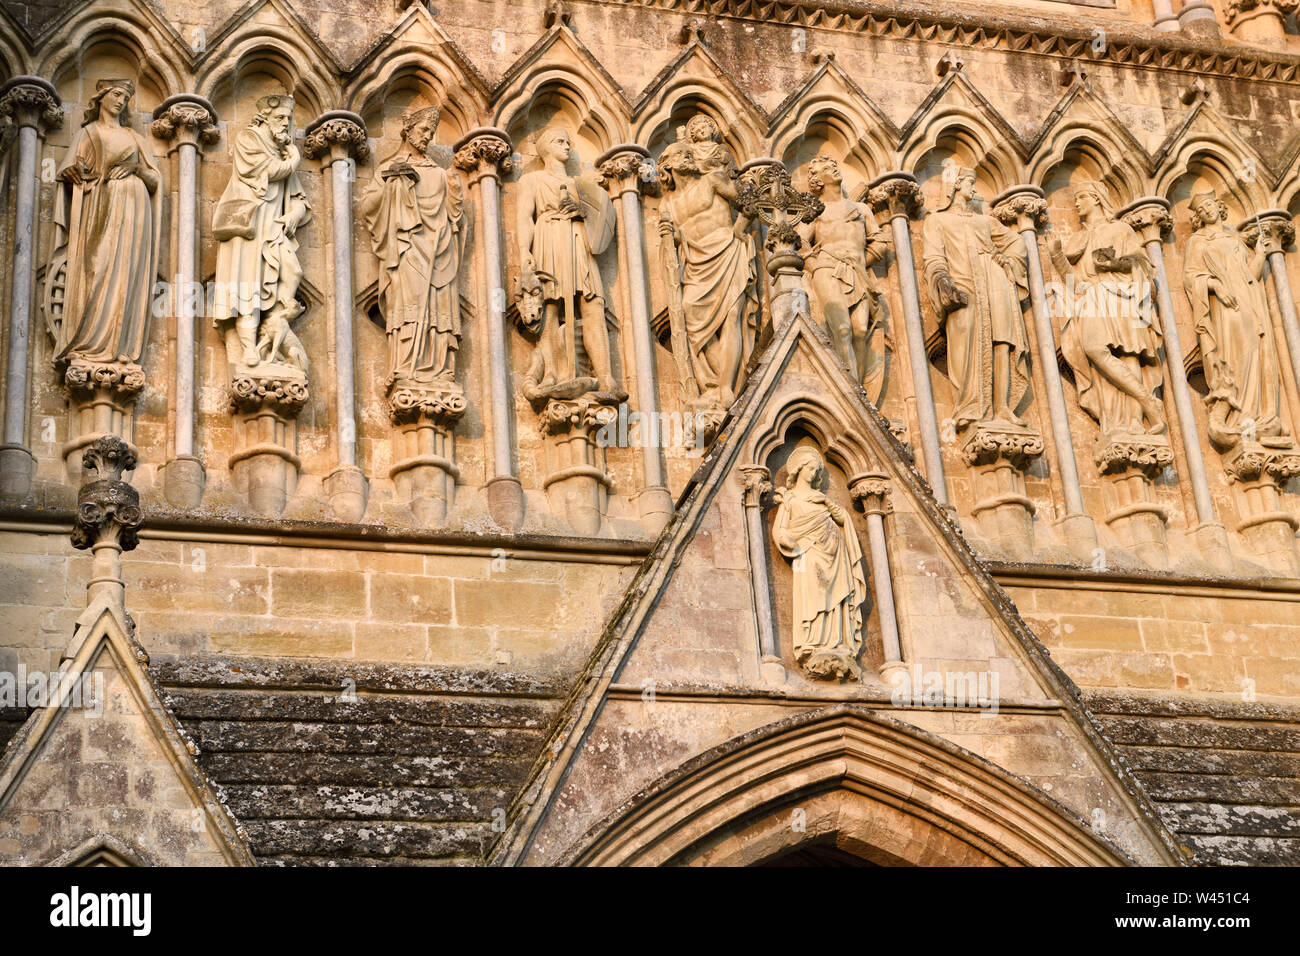 Détail de sculptures en pierre de Saints et de la Vierge Marie sur l'avant du Grand Ouest 13e siècle cathédrale de Salisbury Angleterre médiévale Banque D'Images